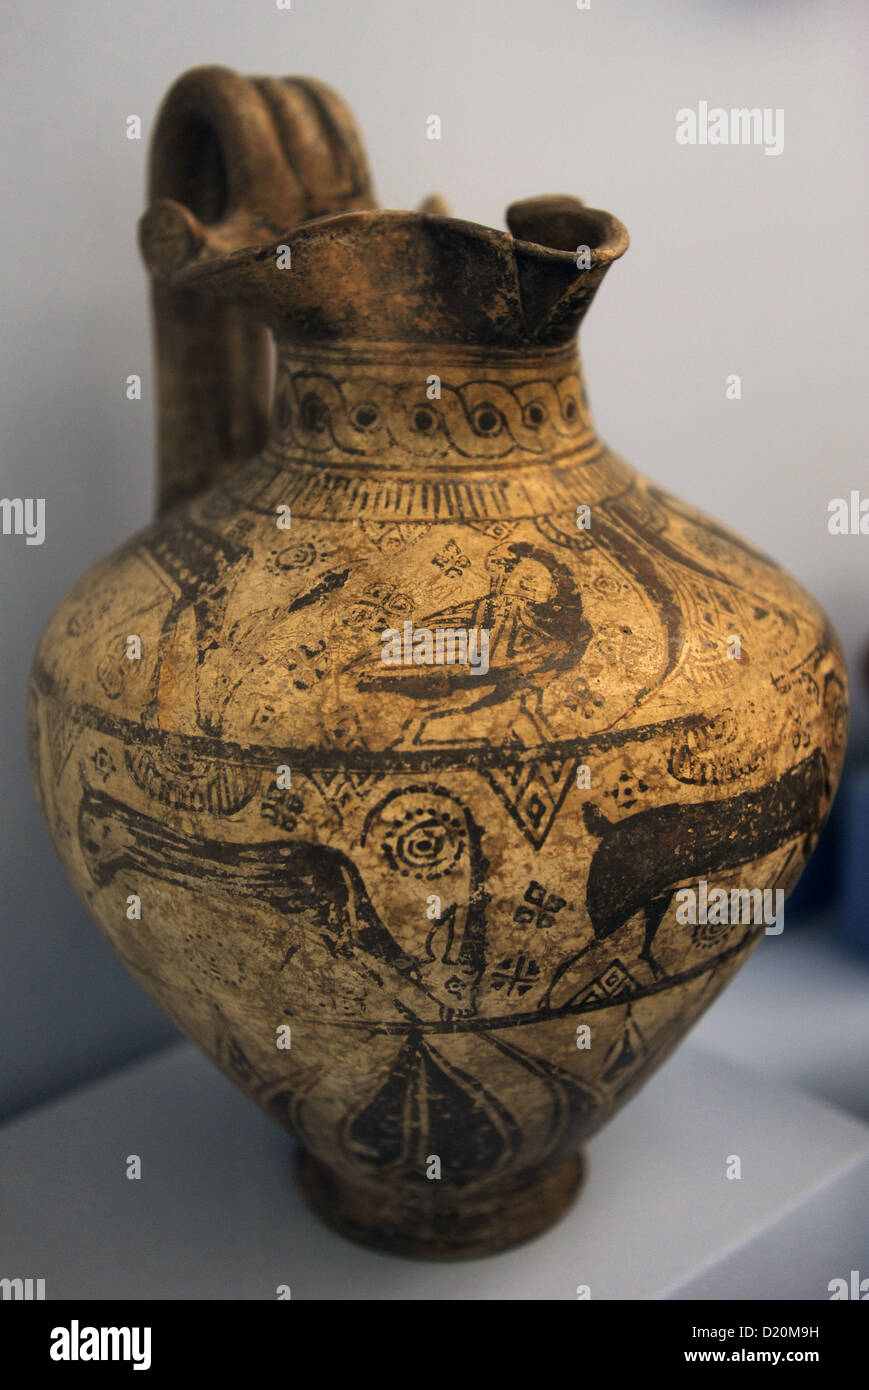 Ceramiche di Mileto, Grecia antica. 625-600 A.C. Museo di Belle Arti. Budapest. Ungheria. Foto Stock